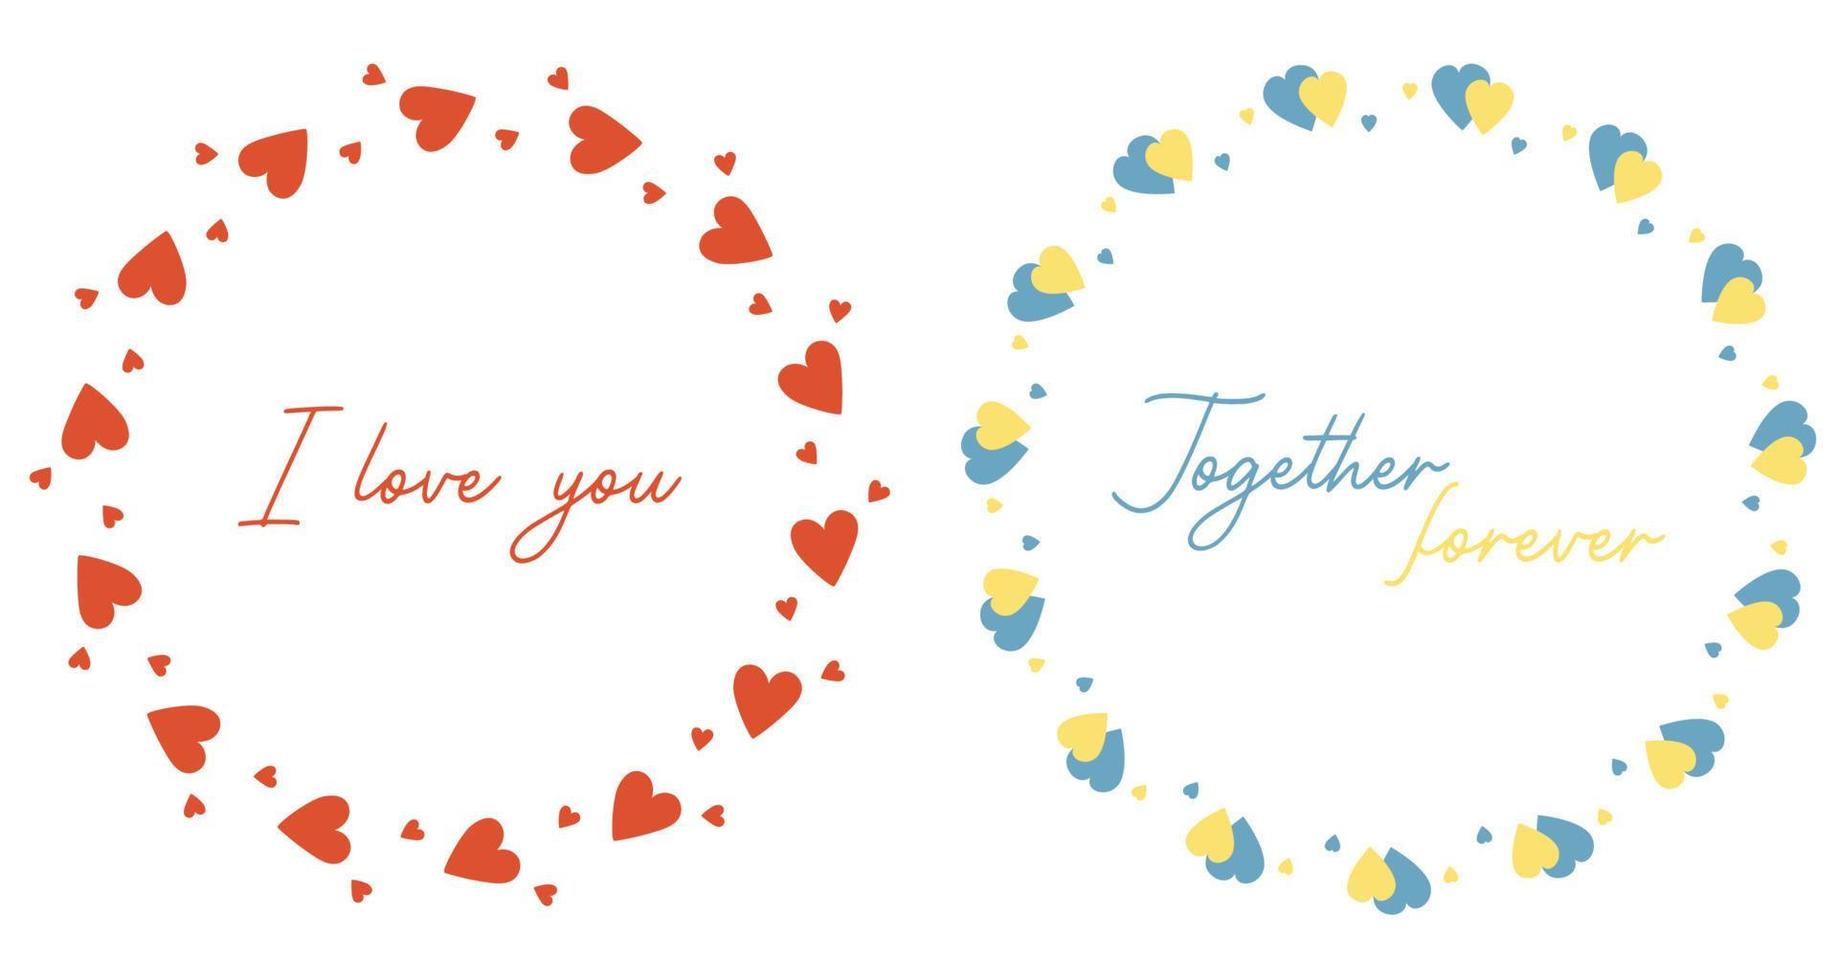 twee ronde frames met zin over liefde. ik hou van jou en voor altijd samen. ronde ansichtkaart van rode en geelblauwe harten. vectorillustratie voor valentijnskaarten, decor, ontwerp, prints en servetten bruiloften vector